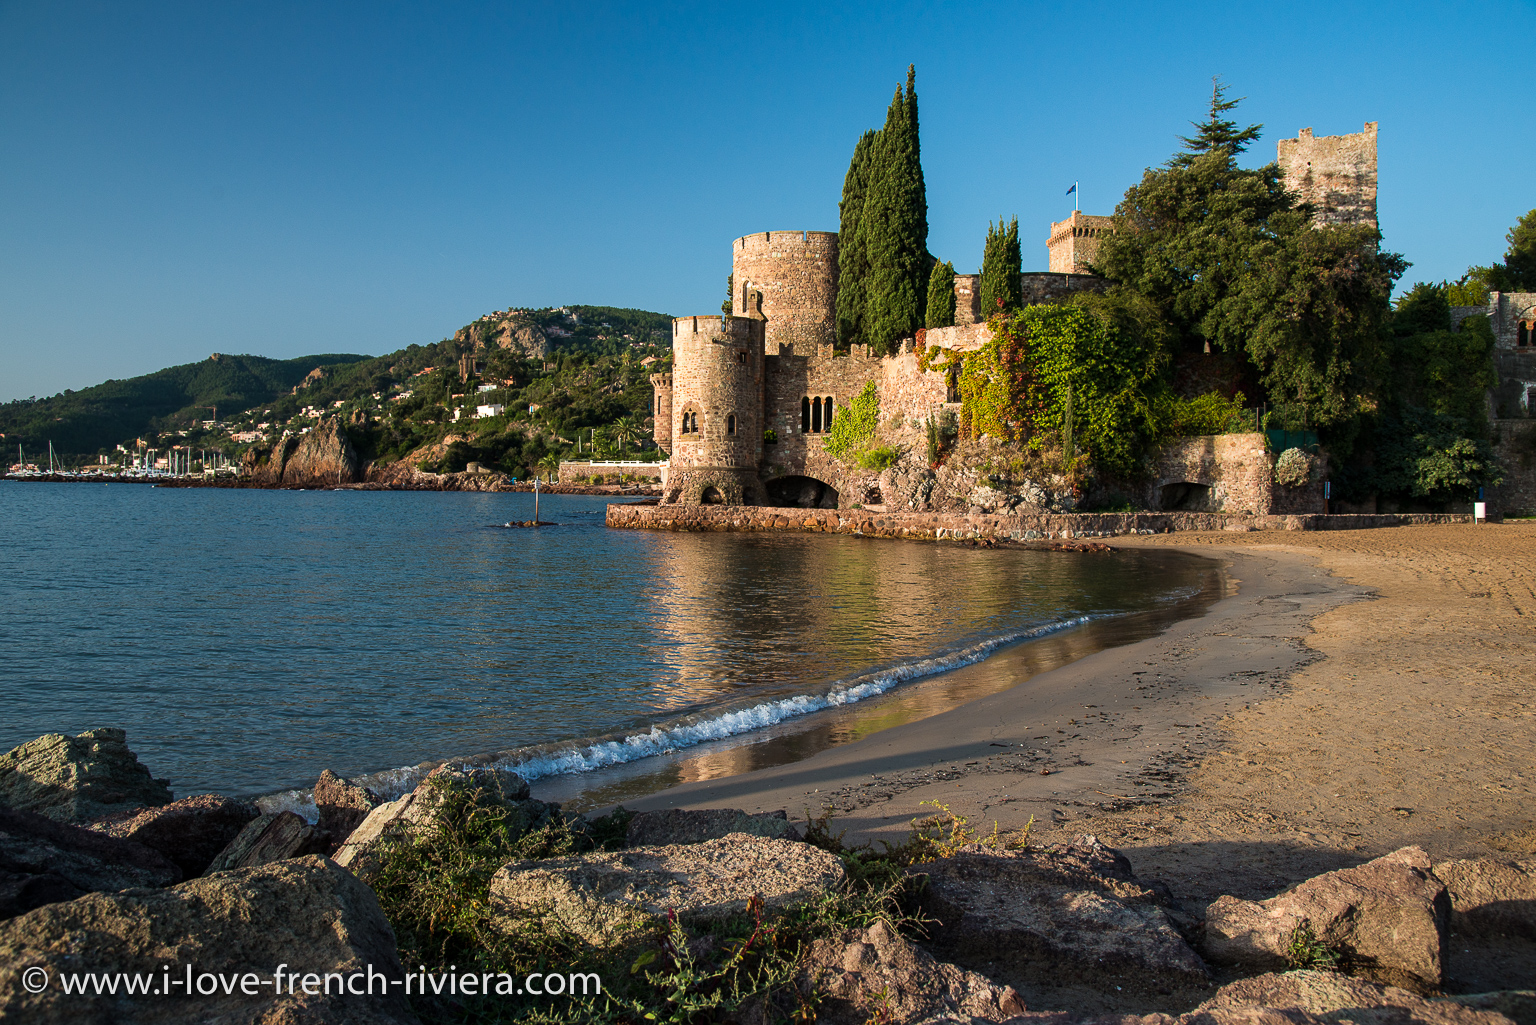 Der Strand und die berhmte mittelalterliche Burg von La Napoule in der Bucht von Cannes liegen sofort vor unserer Ferienwohnung. Bild wurde am Morgen um 08:30 aufgenommen.